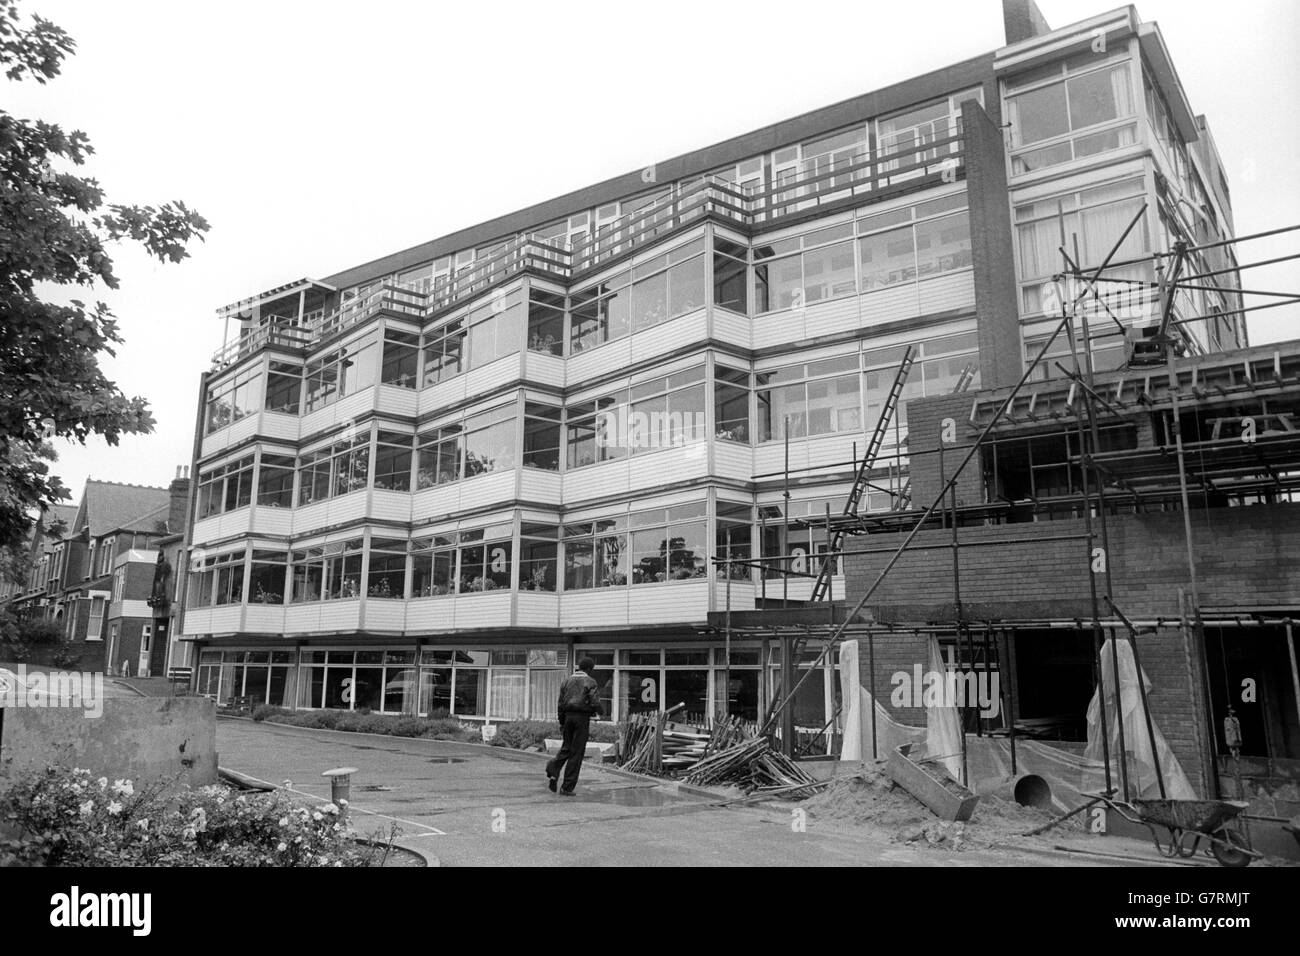 Foto esterna del St Christopher's Hospice - Lawrie Park, Sydenham, Londra, che è un nuovo ospizio moderno fondato nel 1967 da Dame Cicely Saunders. Foto Stock